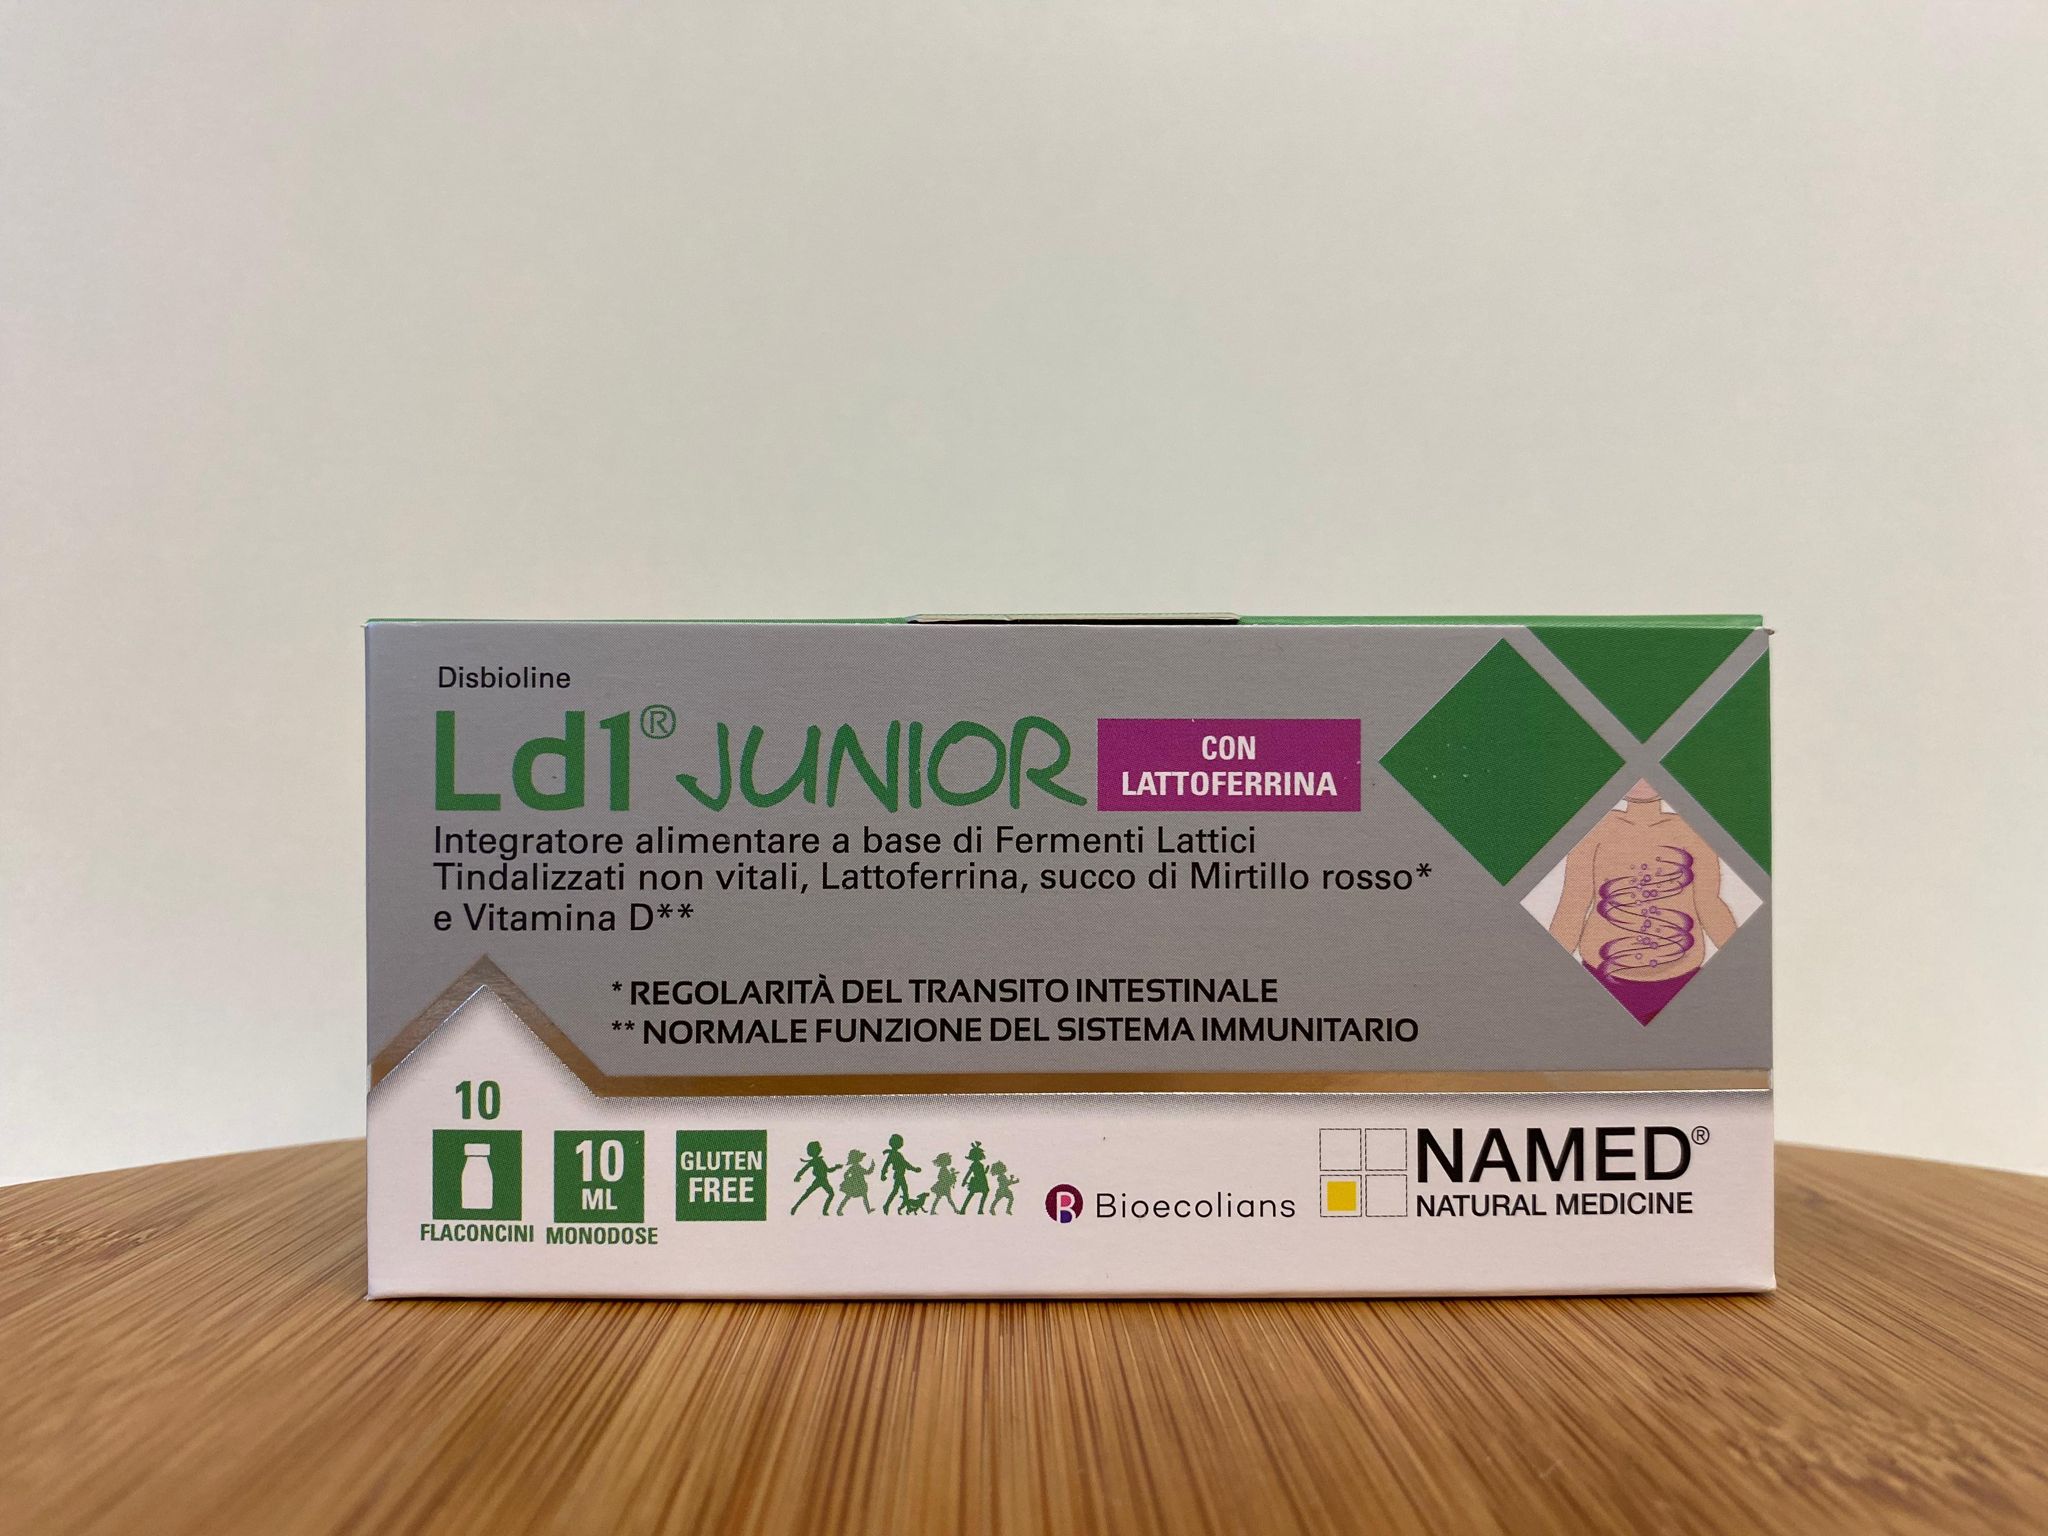 Named: Ld1 Junior